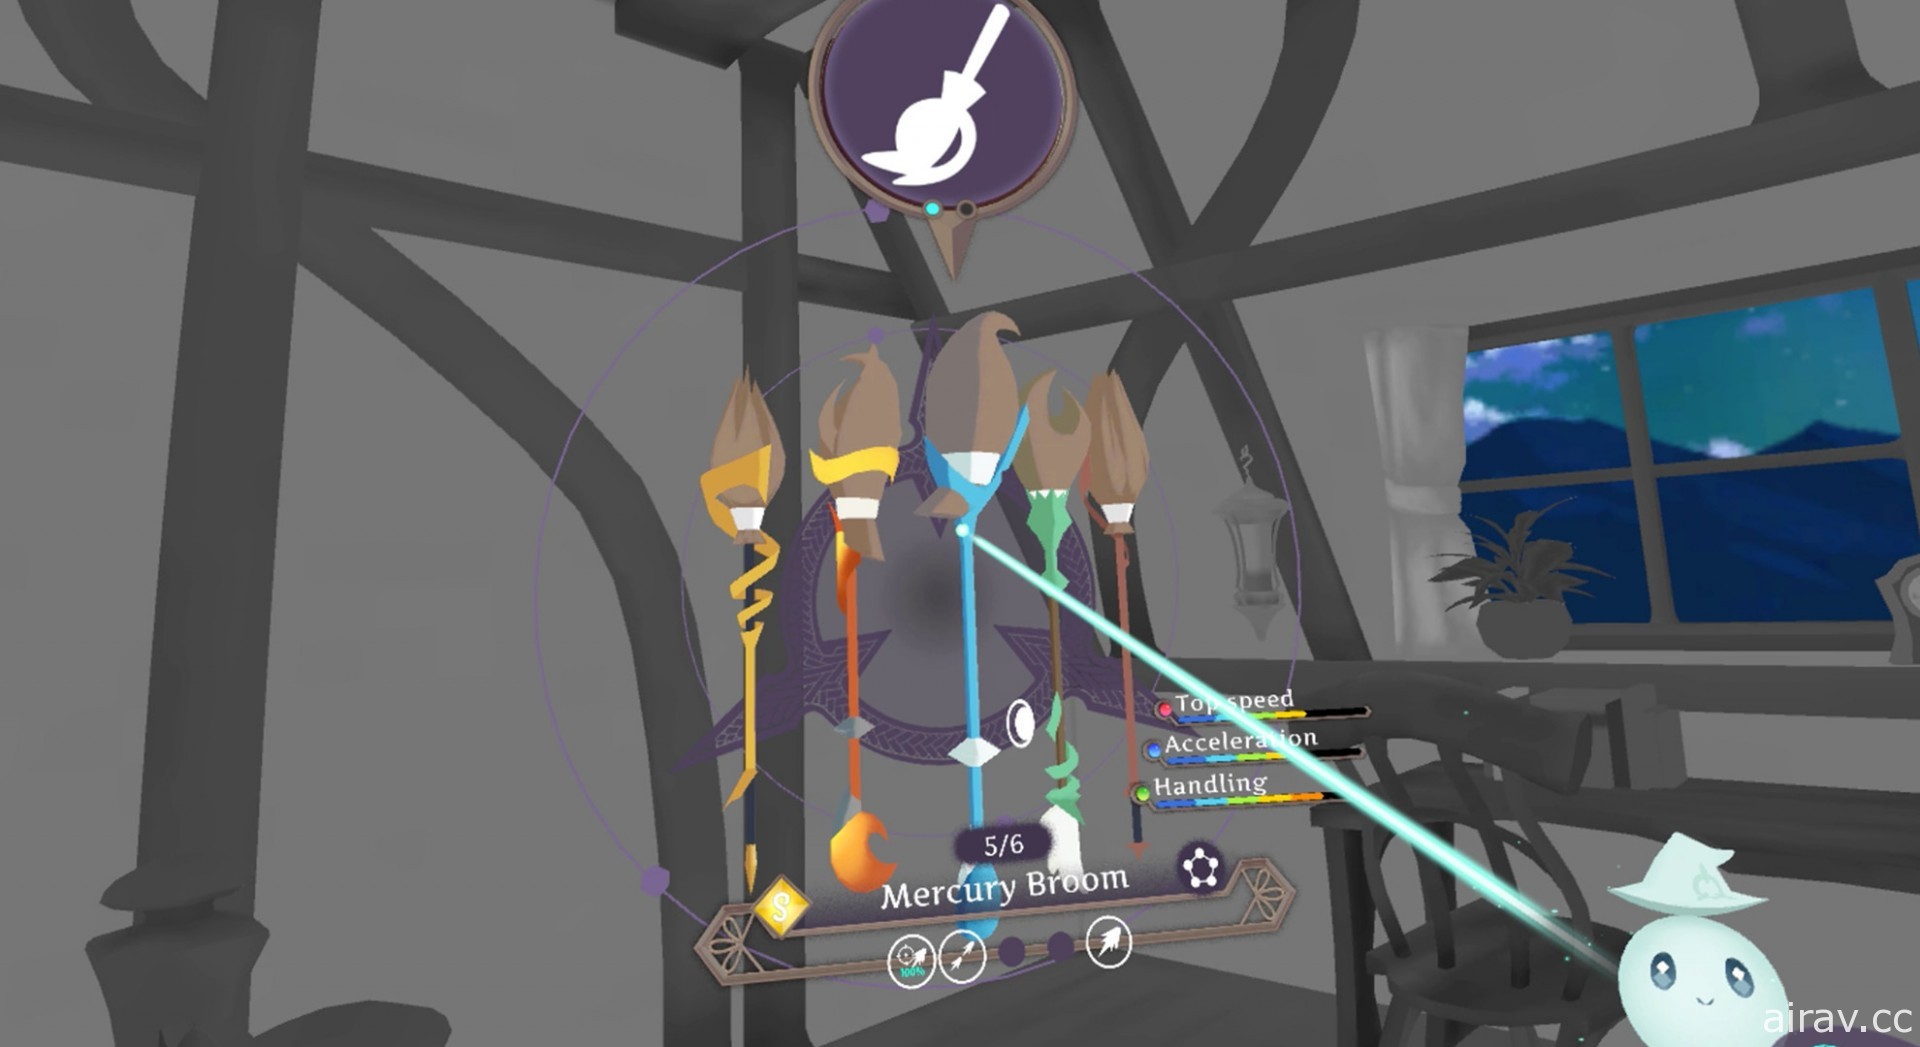 VR 竞速游戏《小魔女学园 VR 向扫帚星许愿》7 月 15 日支援 SteamVR、PSVR 等装置